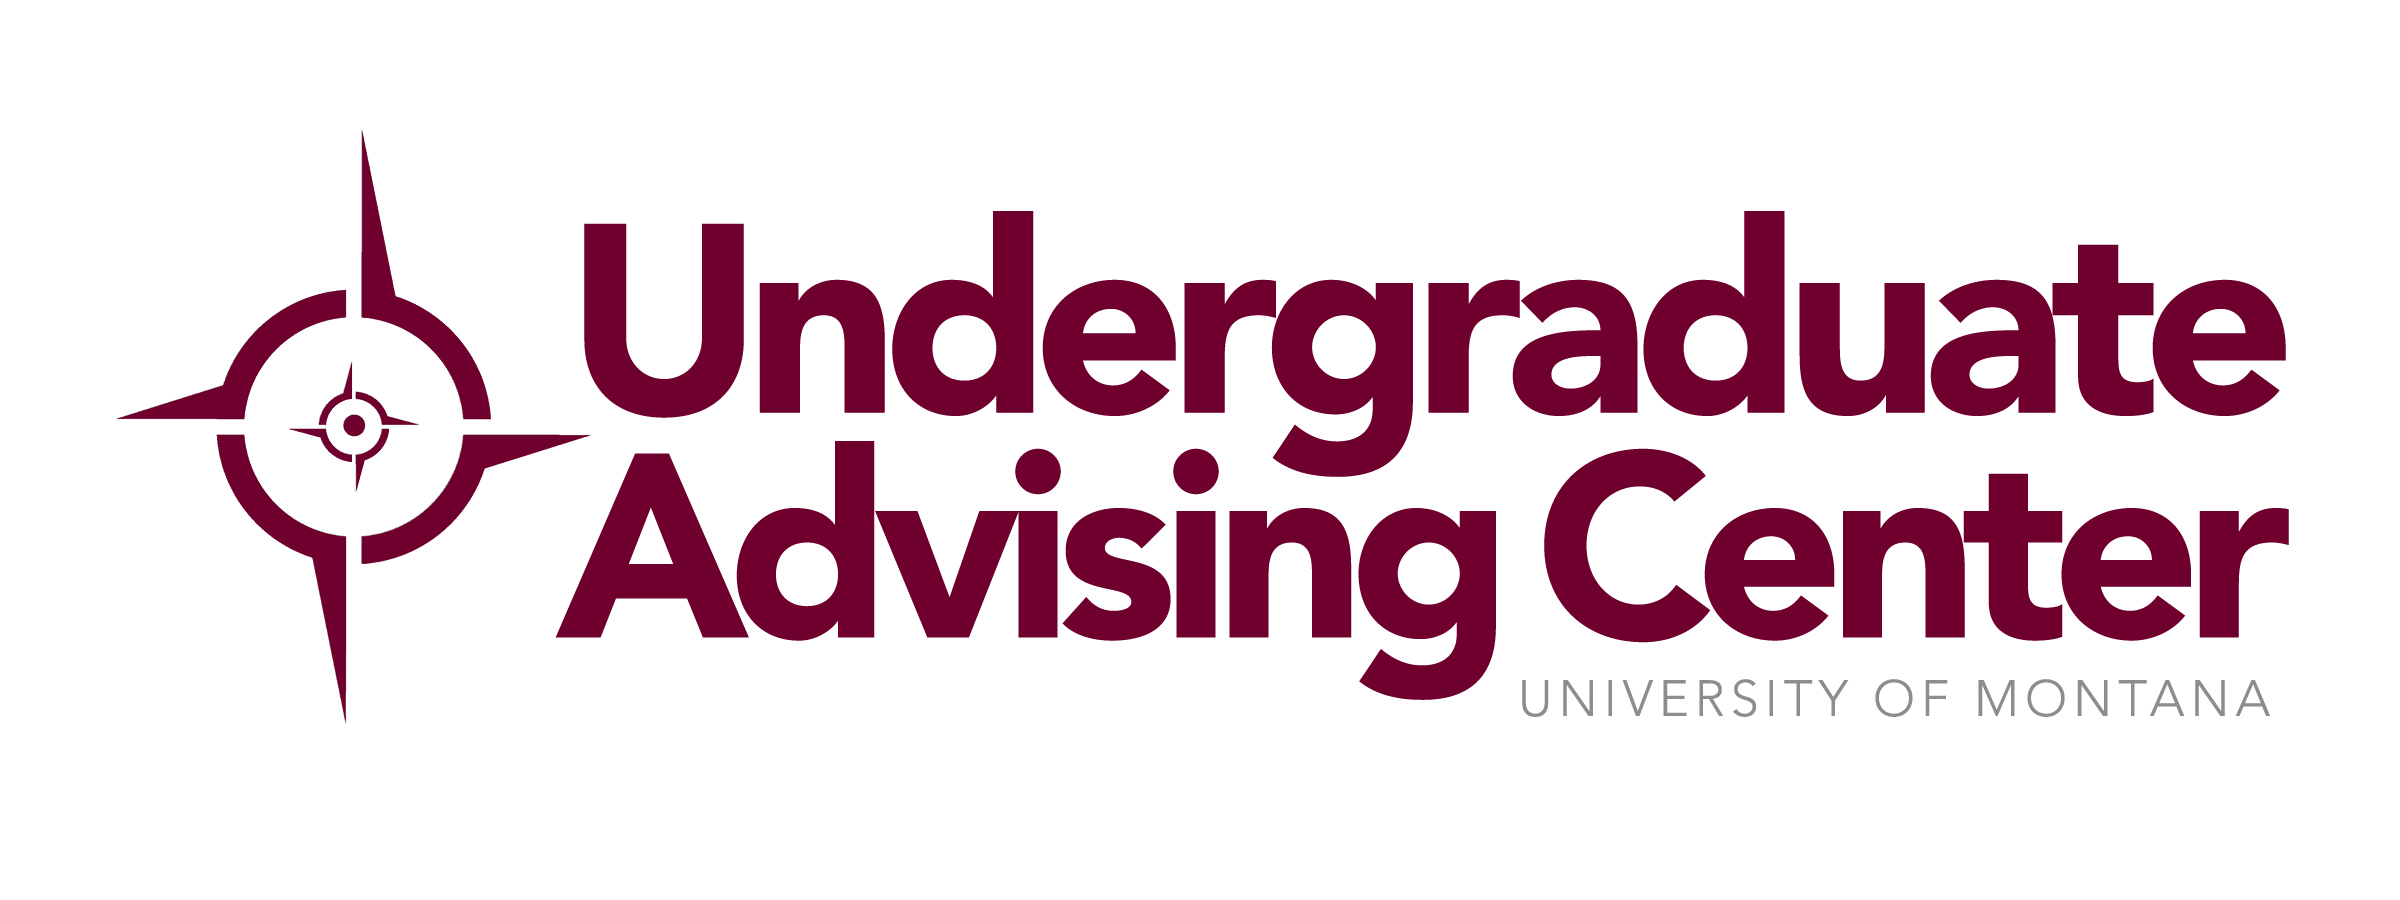 Undergraduate Advising Center